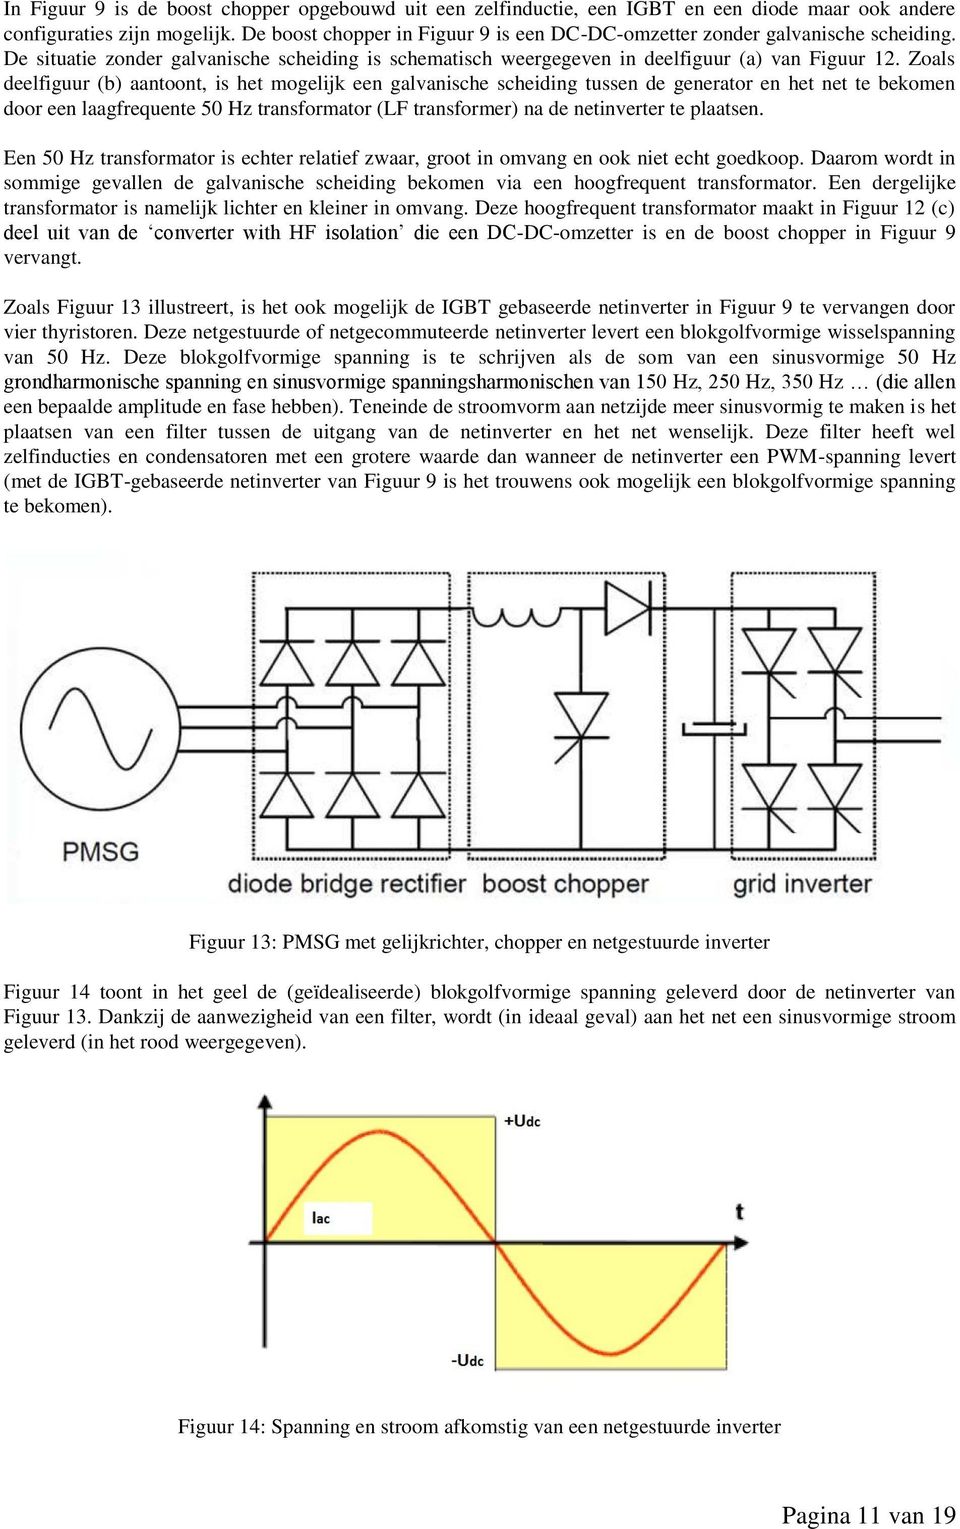 Zoals deelfiguur (b) aantoont, is het mogelijk een galvanische scheiding tussen de generator en het net te bekomen door een laagfrequente 50 Hz transformator (LF transformer) na de netinverter te